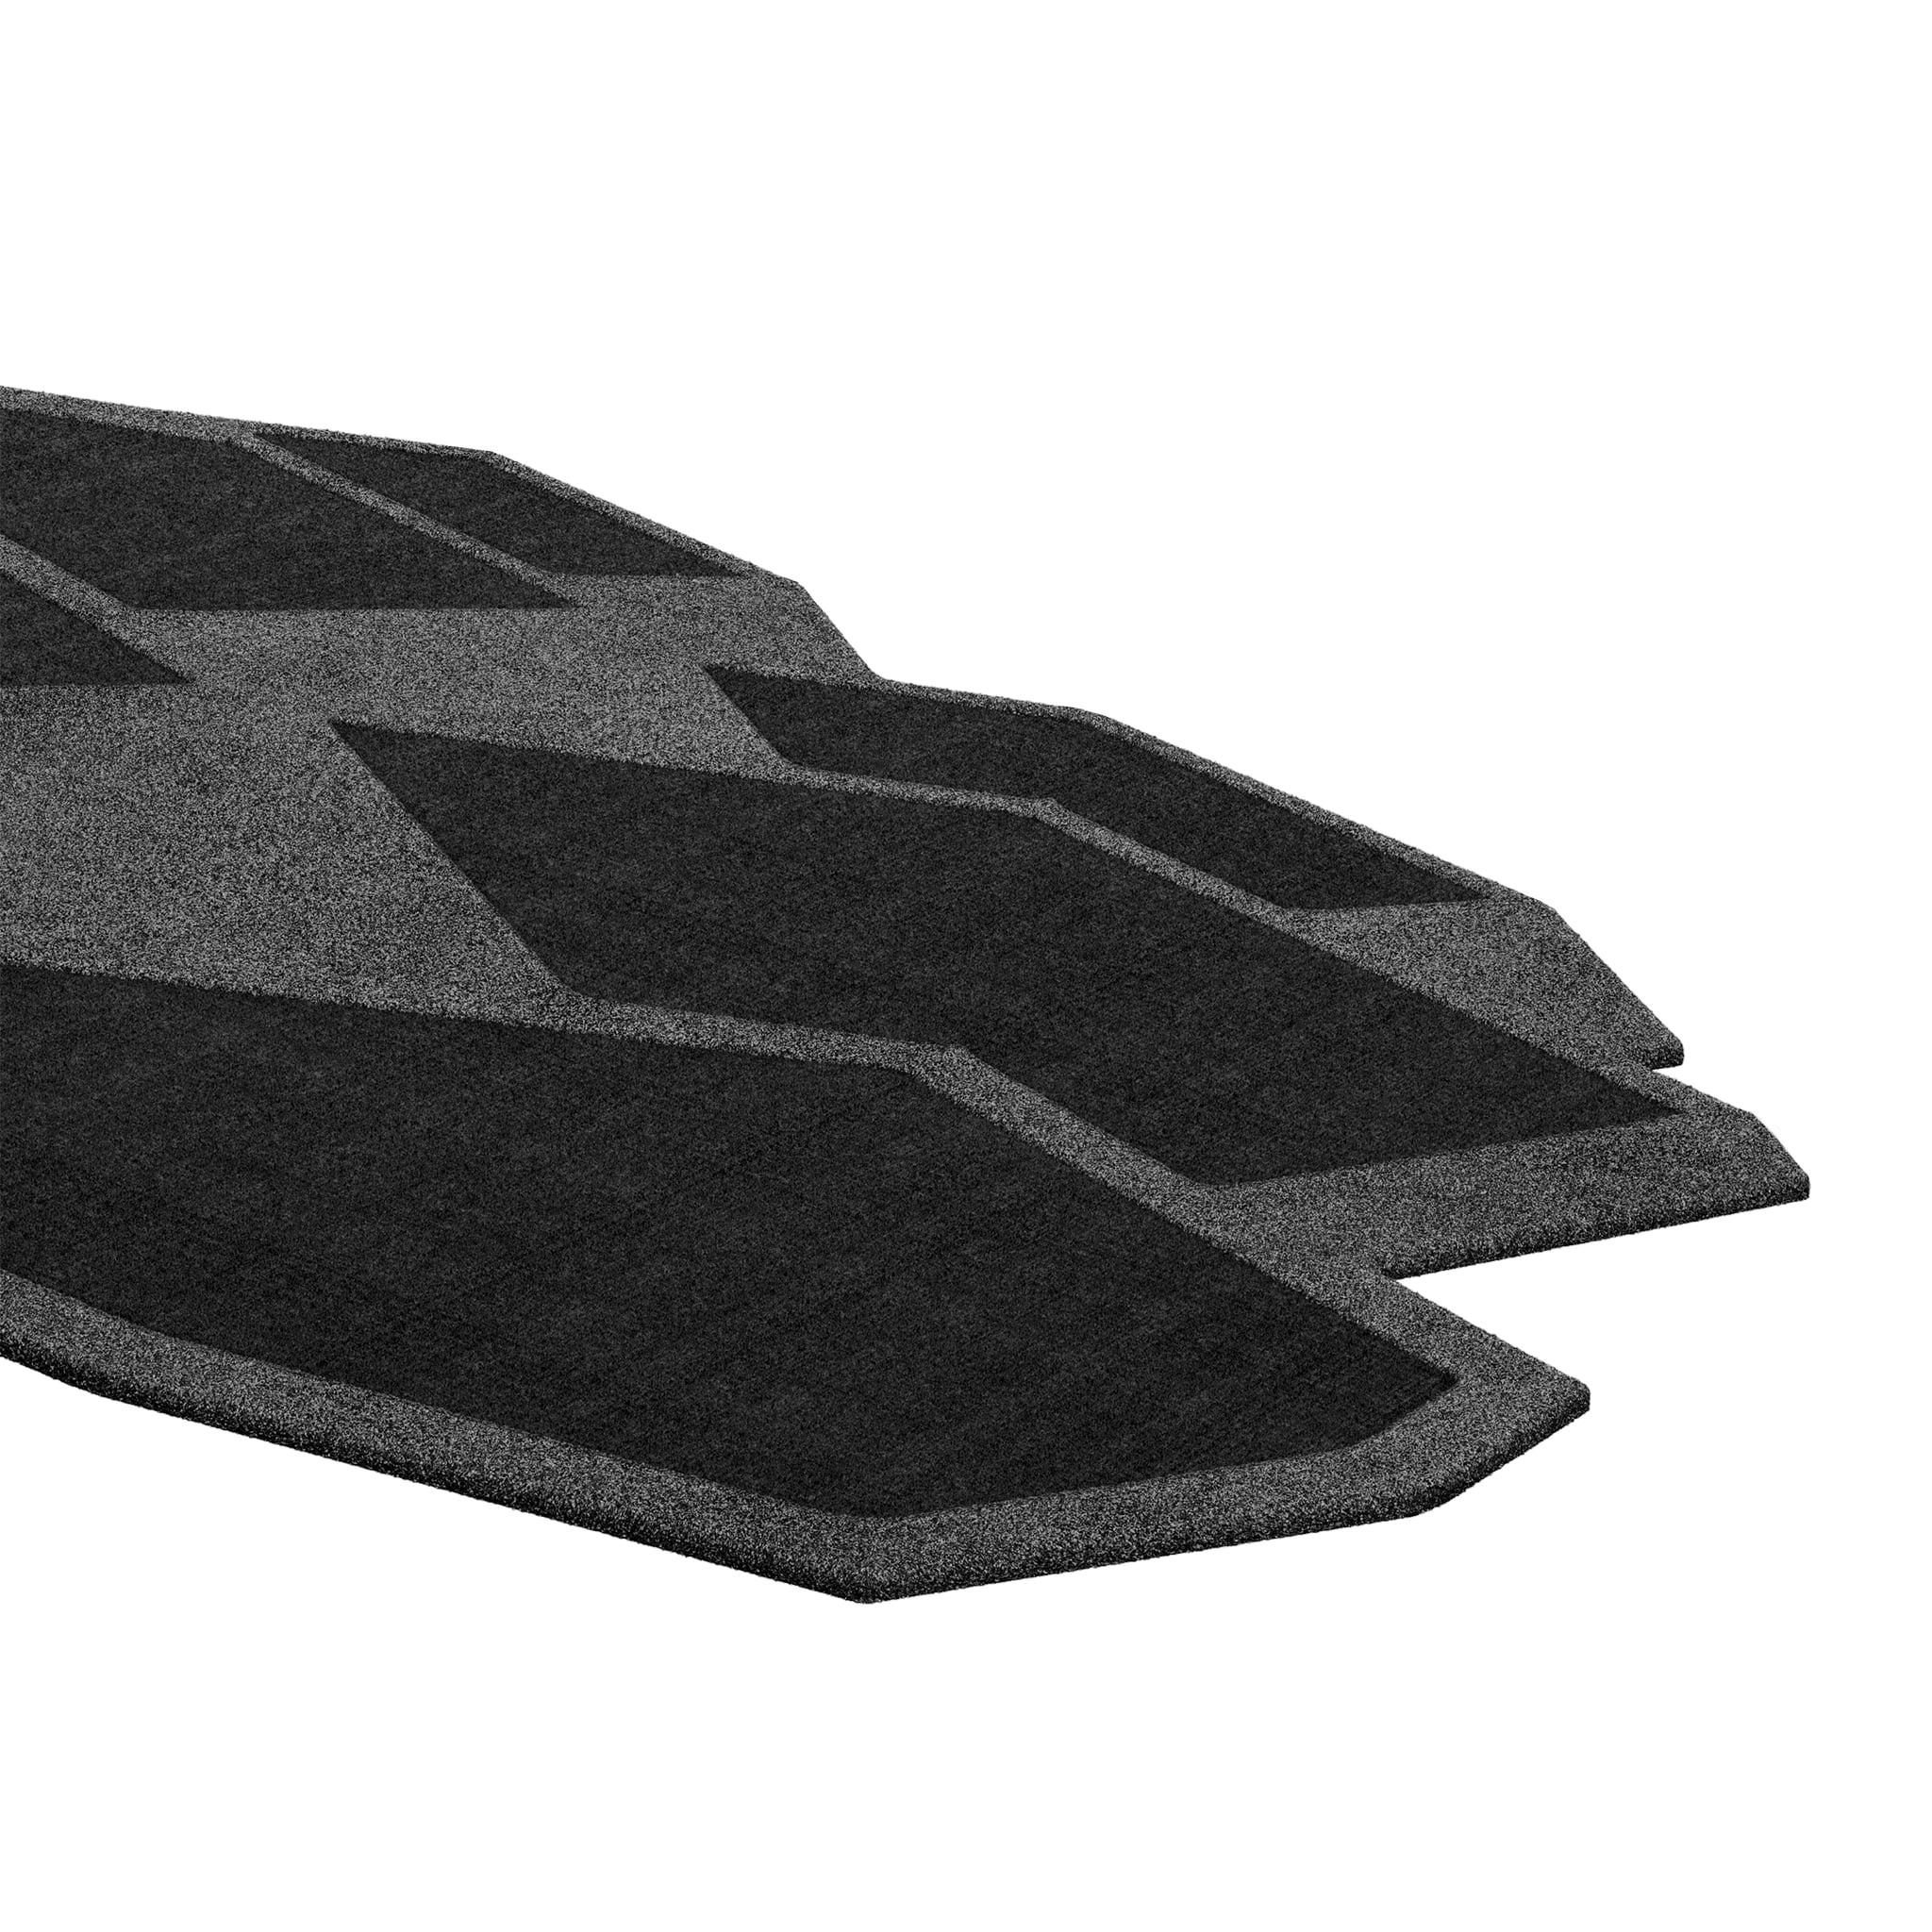 Tapis Retro #016 ist ein Retro-Teppich mit unregelmäßiger Form und monochromen Farbtönen. Inspiriert von architektonischen Linien, setzt dieser geometrische Teppich in jedem Wohnbereich ein Zeichen.

Mit einer 3D-Tufting-Technik, die Schnitt- und